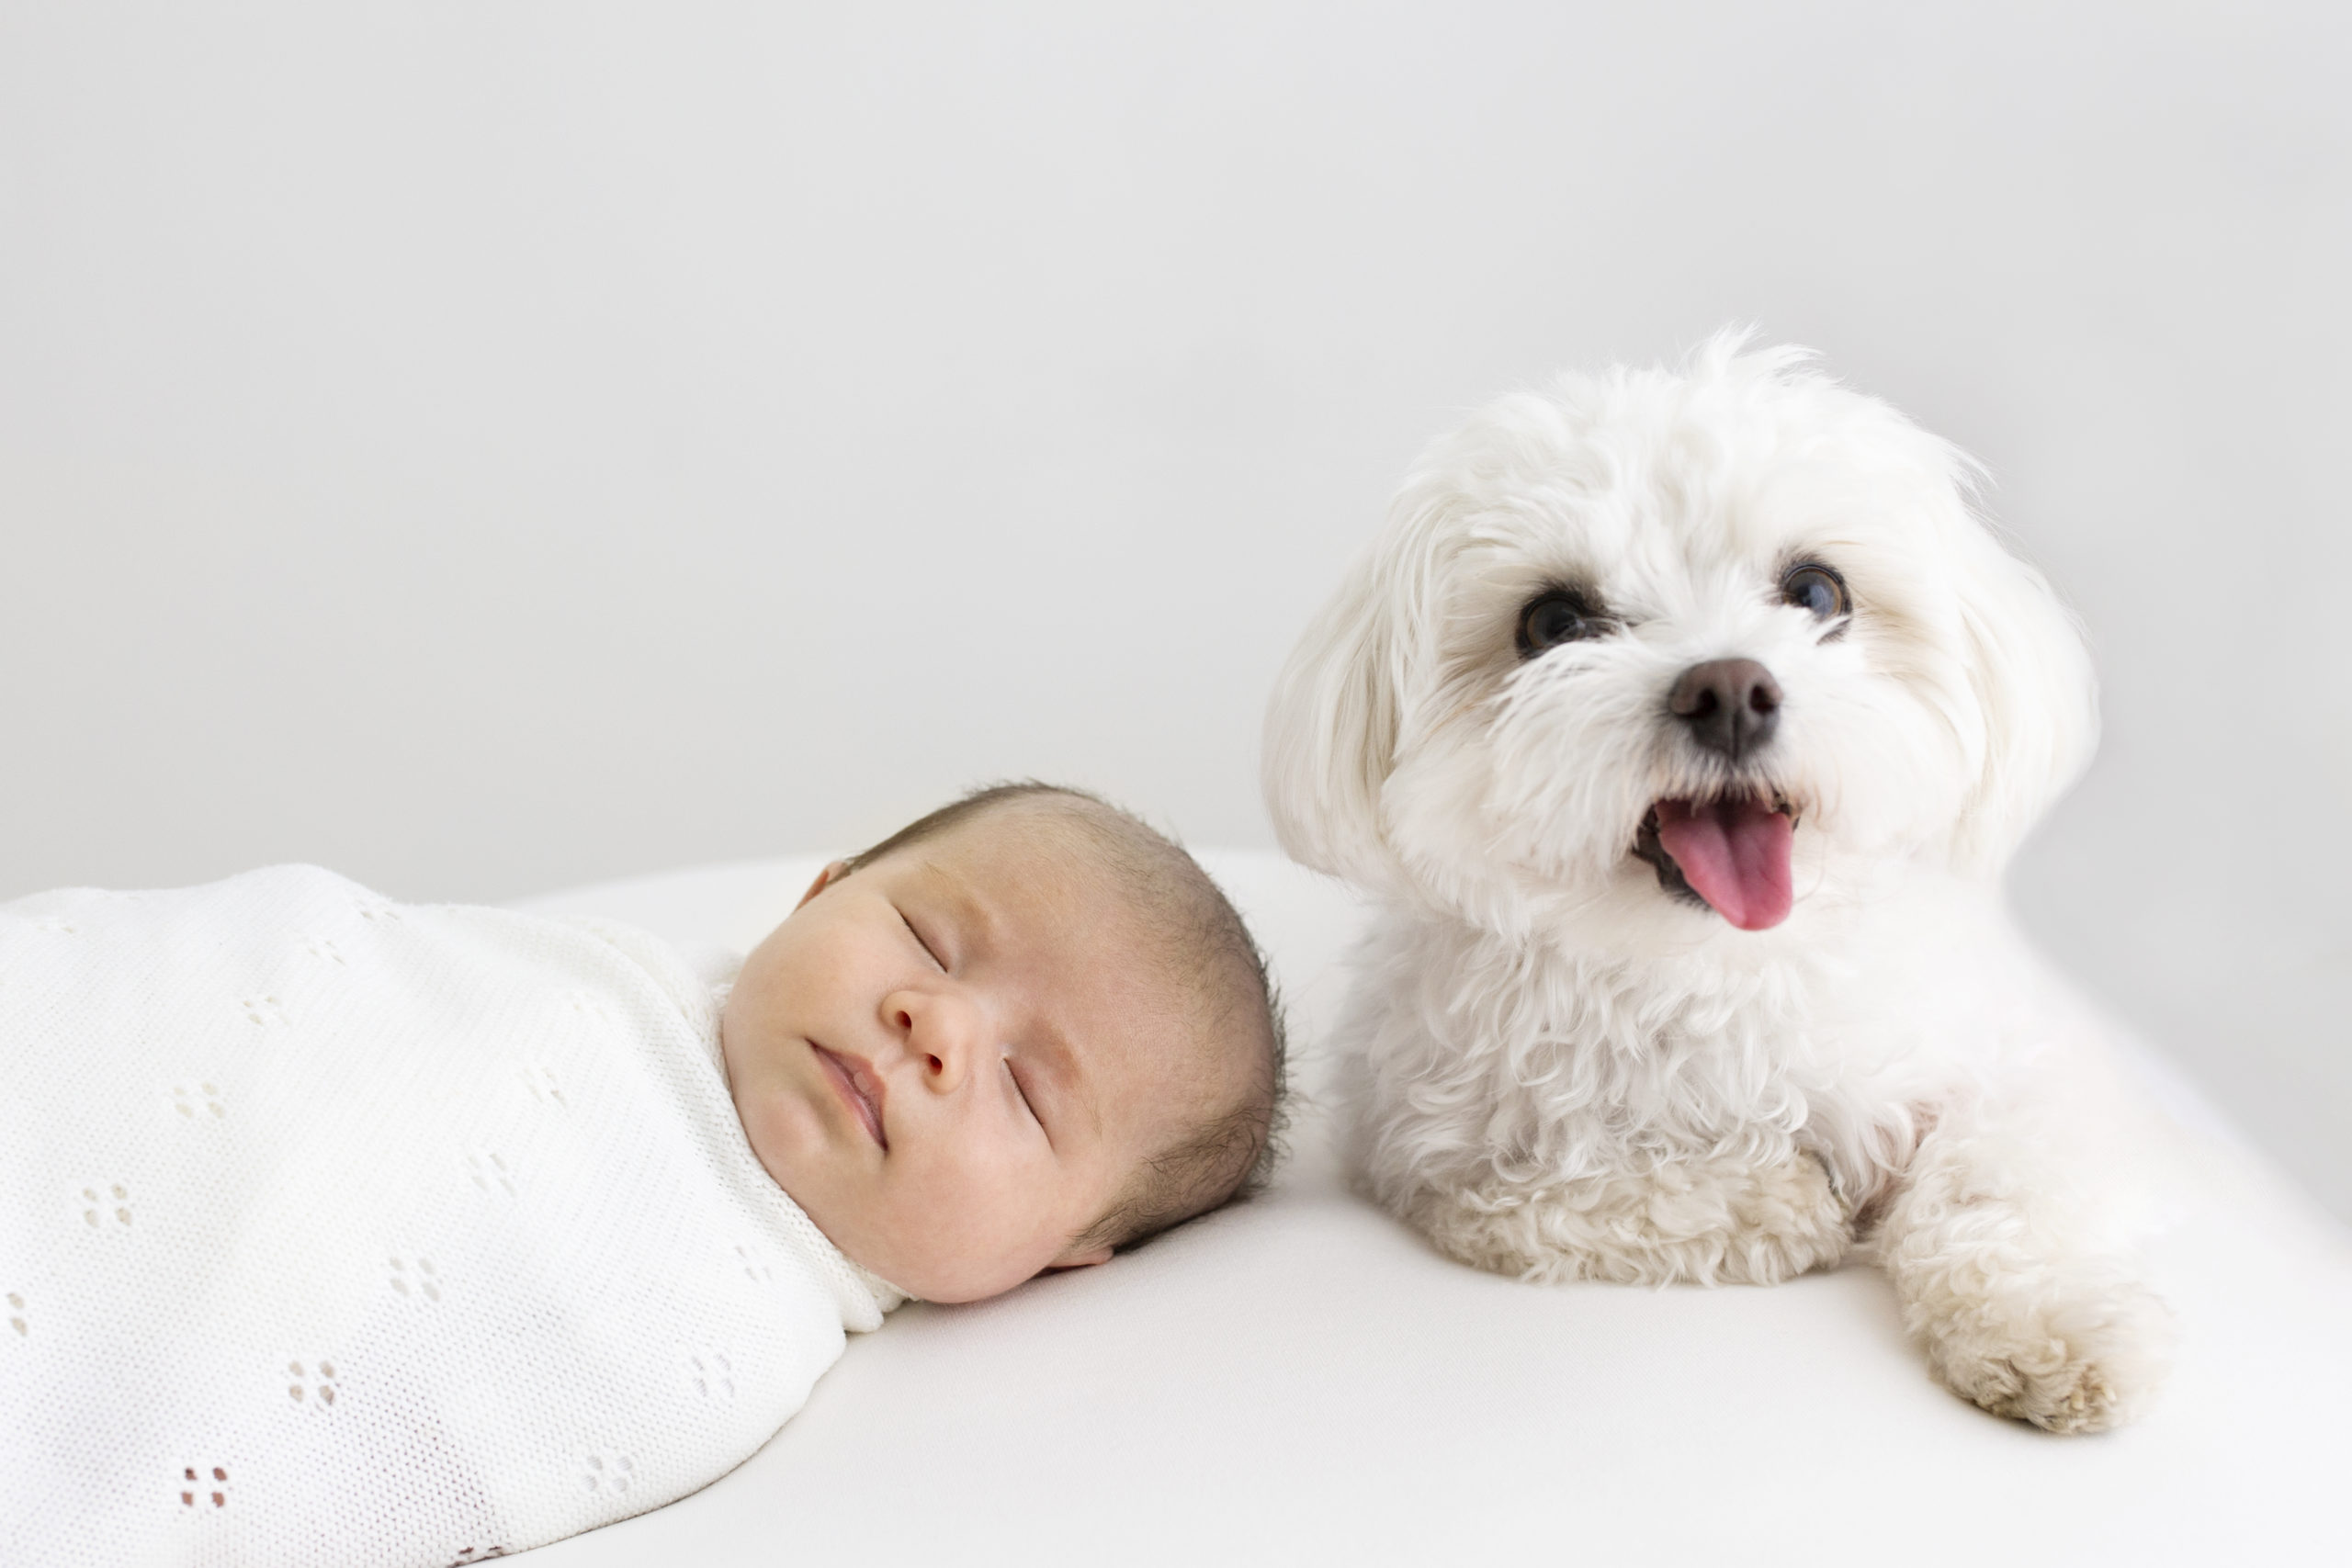 Woking newborn photographer. Newborn baby girl with dog